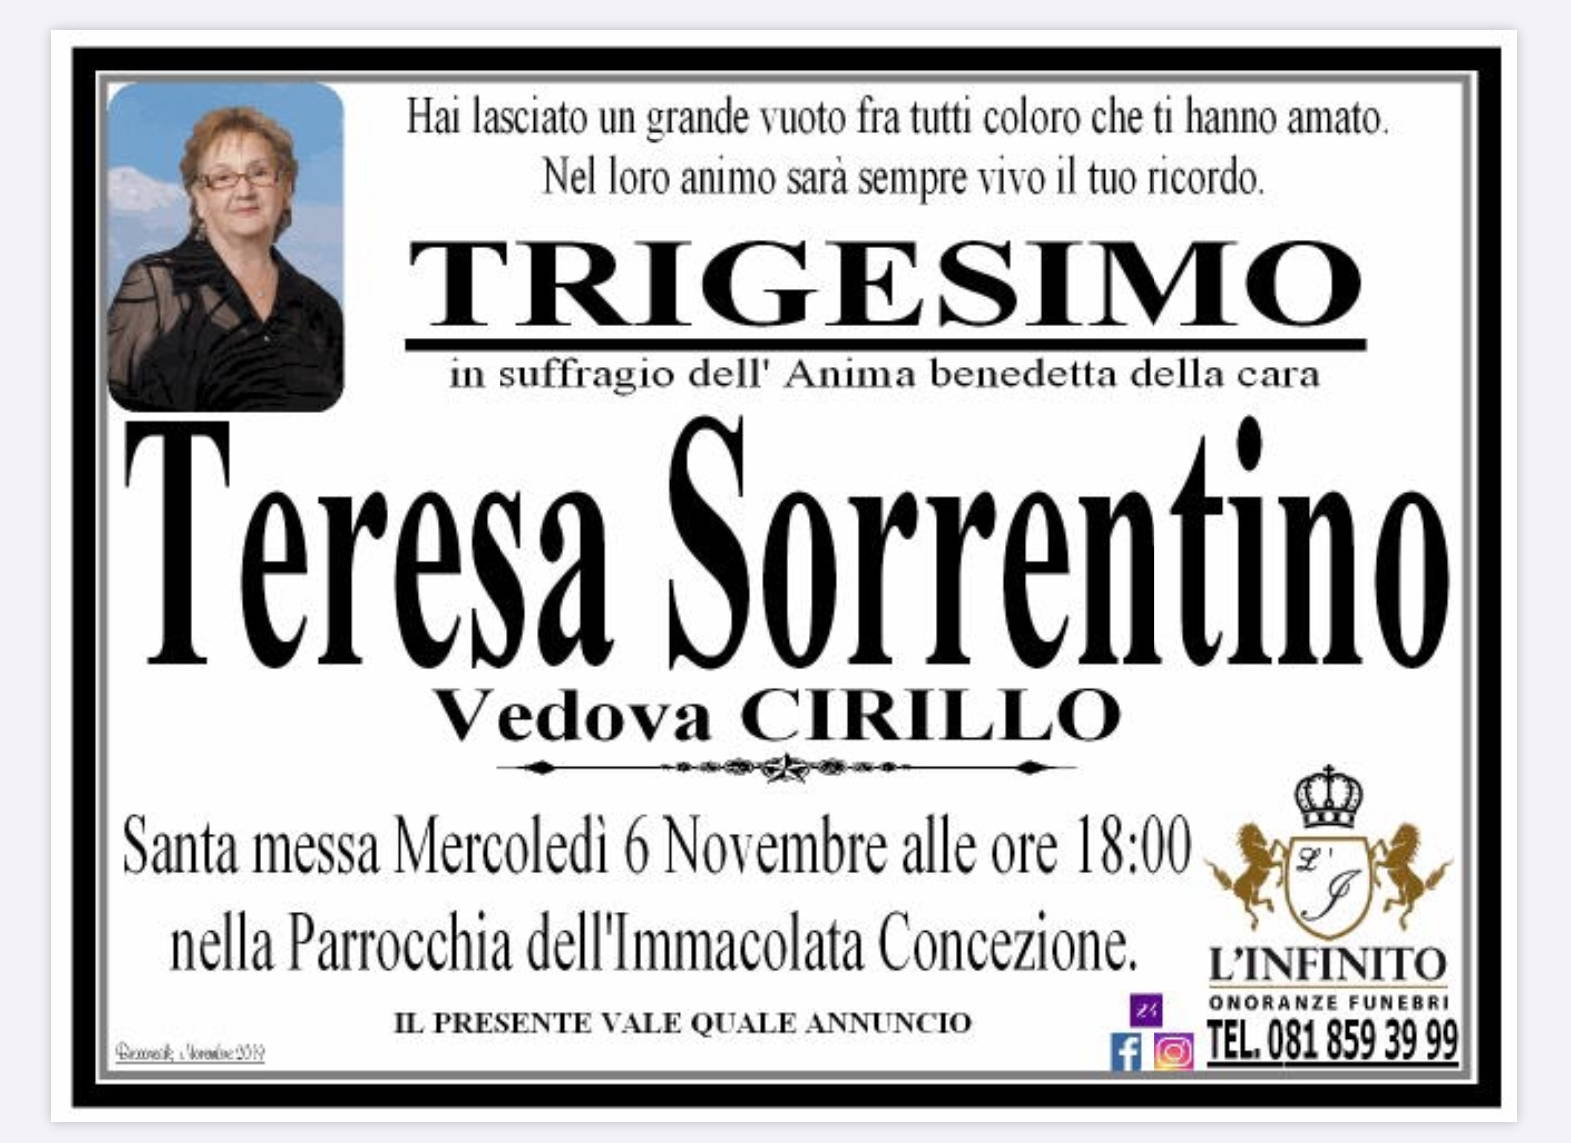 Teresa Sorrentino